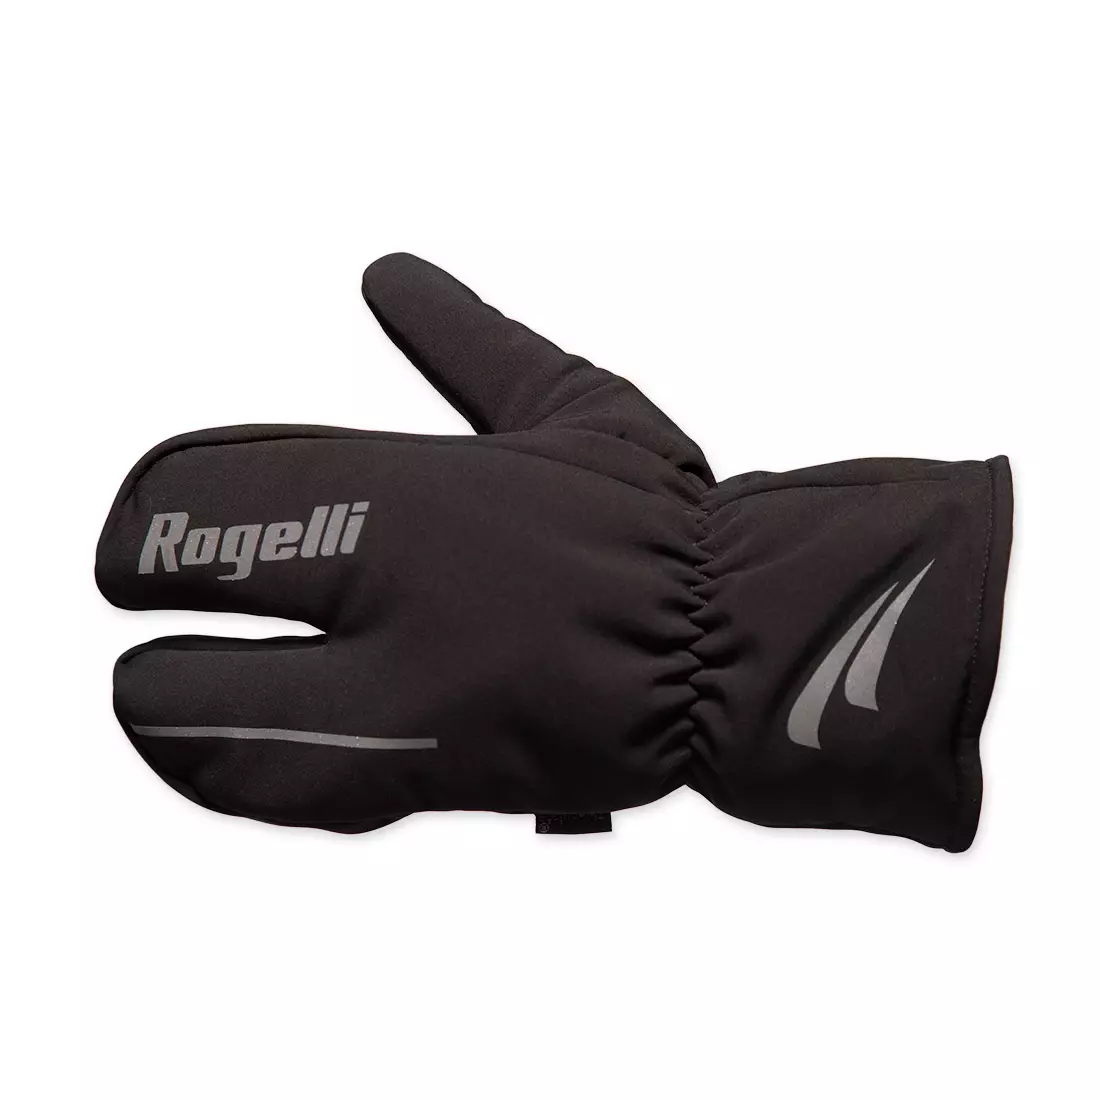 Mănuși de iarnă pentru ciclism ROGELLI KENO, negre 006.103